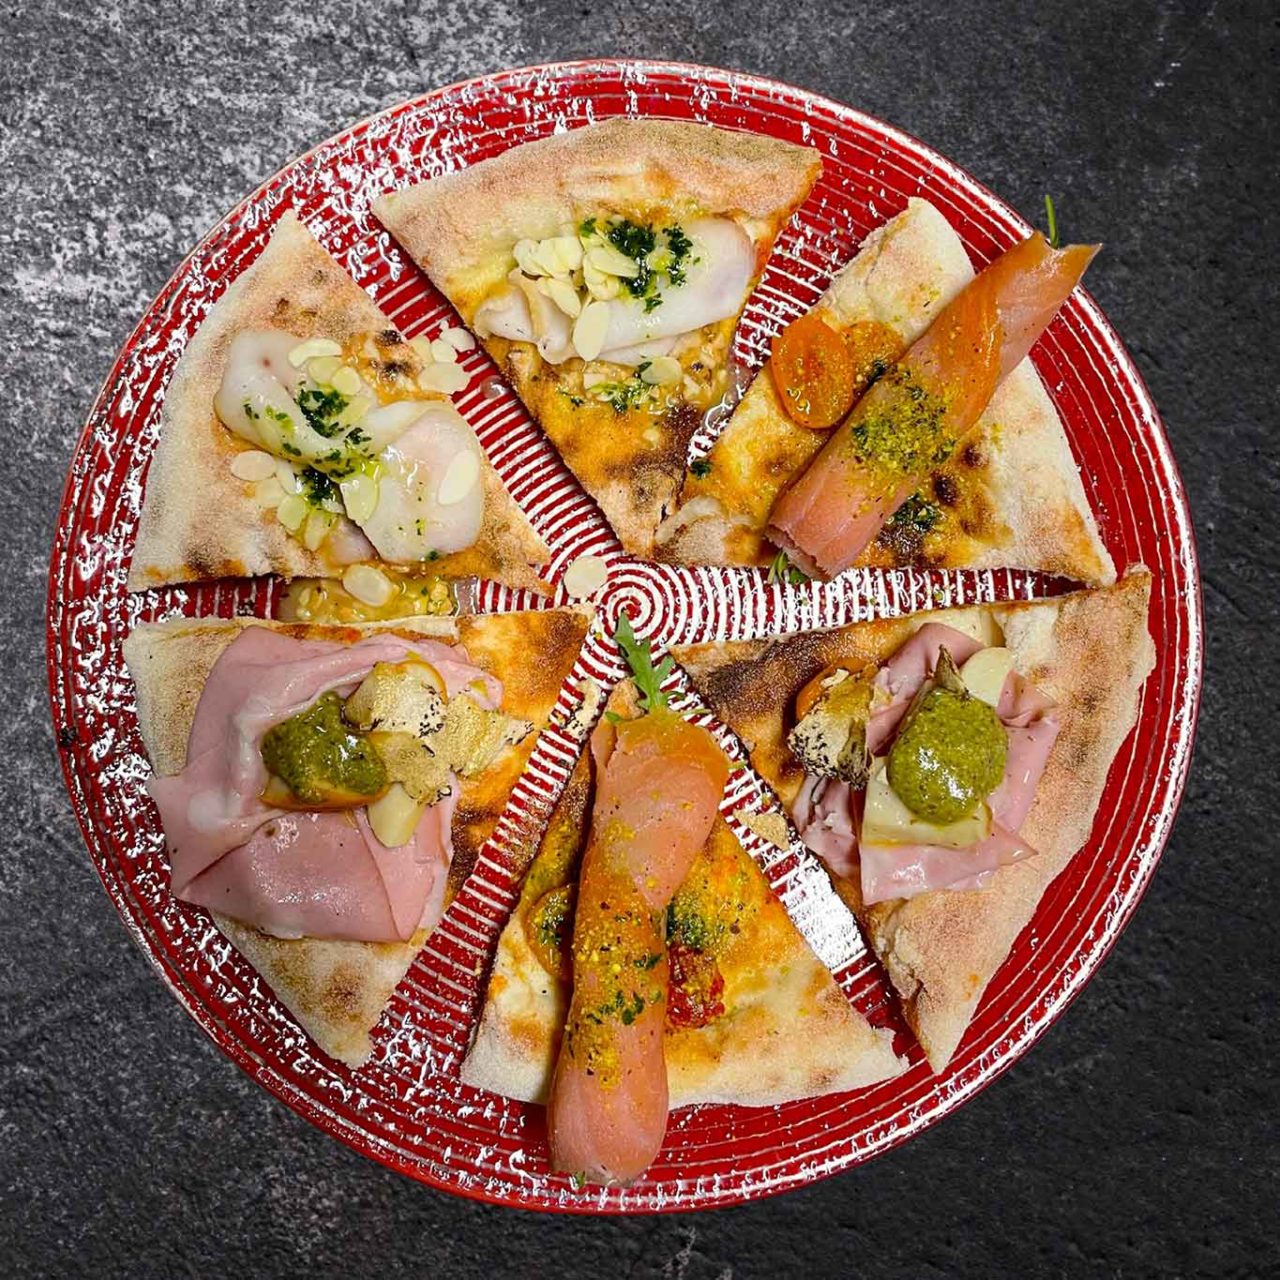 degustazione alla pizzeria Caveau a Ispica in Sicilia celebrata da Selvaggia Lucarelli